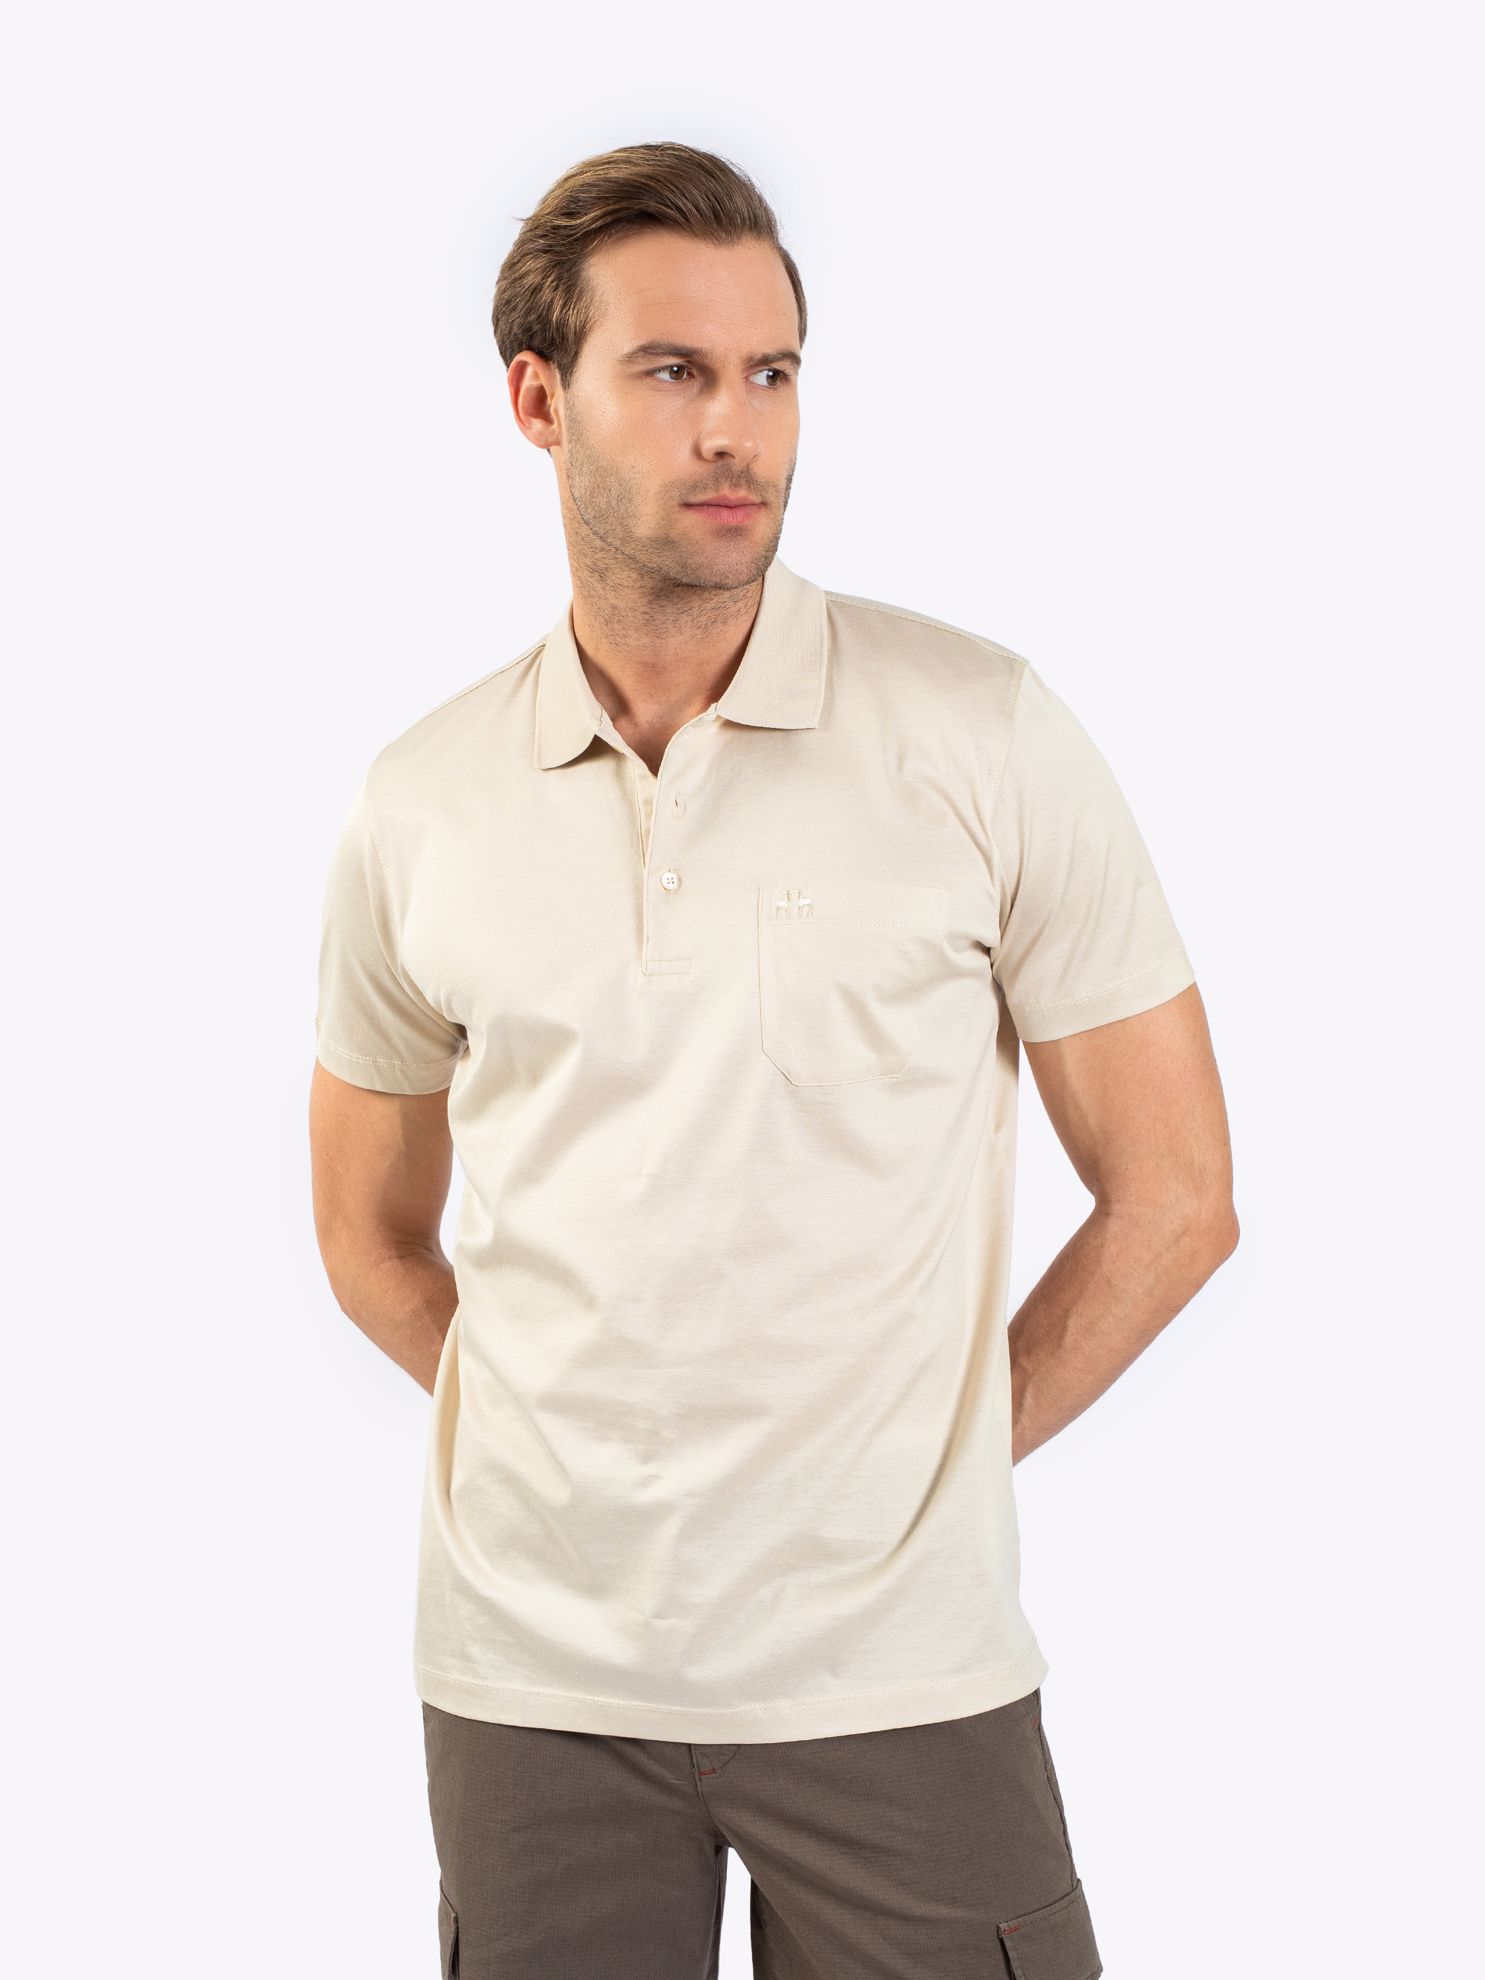 Karaca Erkek Büyük Beden Polo Yaka Tişört-Açık Bej. ürün görseli